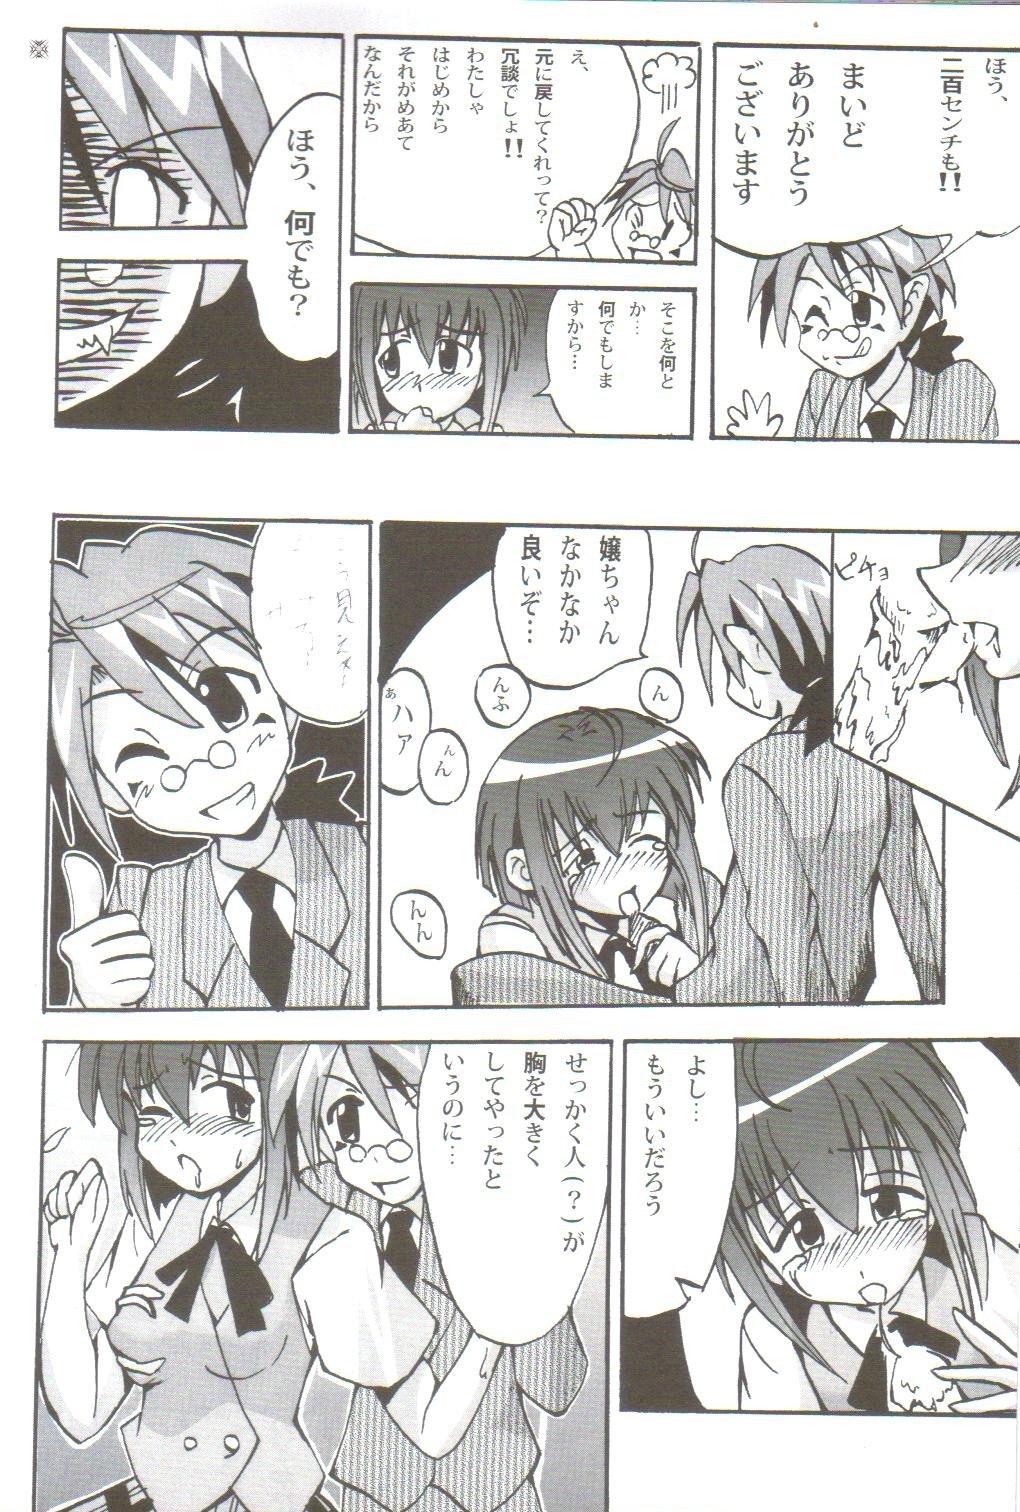 Young Ikenai Sensei Negima - Mahou sensei negima Game - Page 9